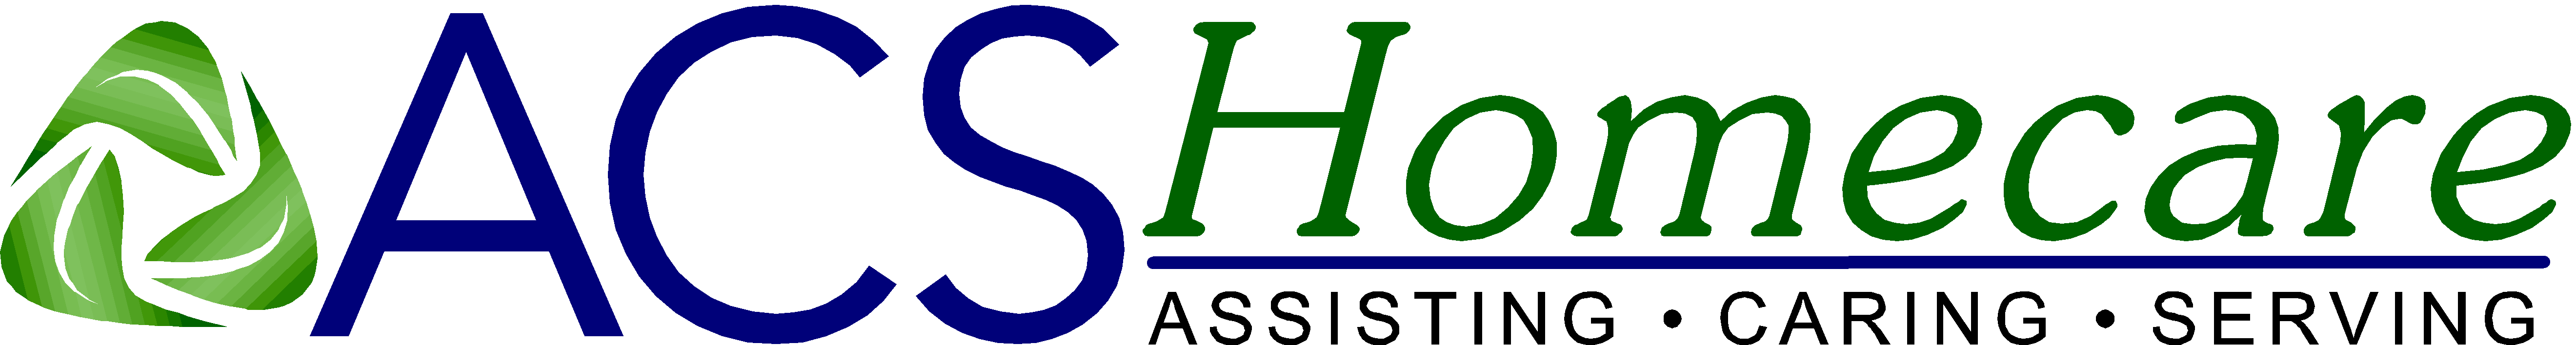 cropped-Horizontal-logo-2